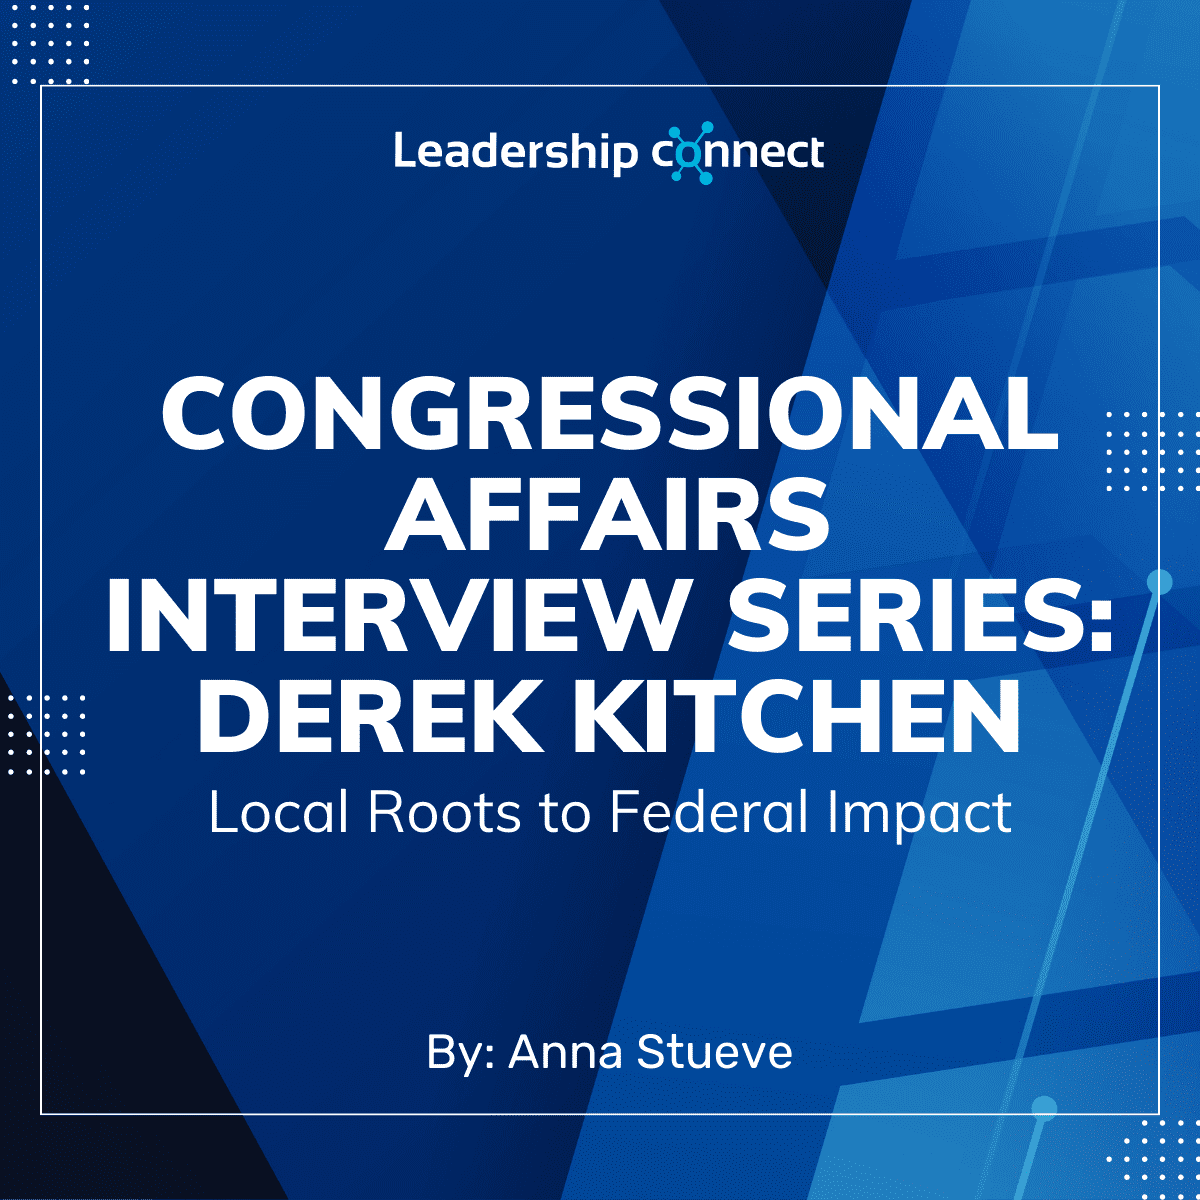 Federal Congressional Affairs Interview Series with Derek Kitchen